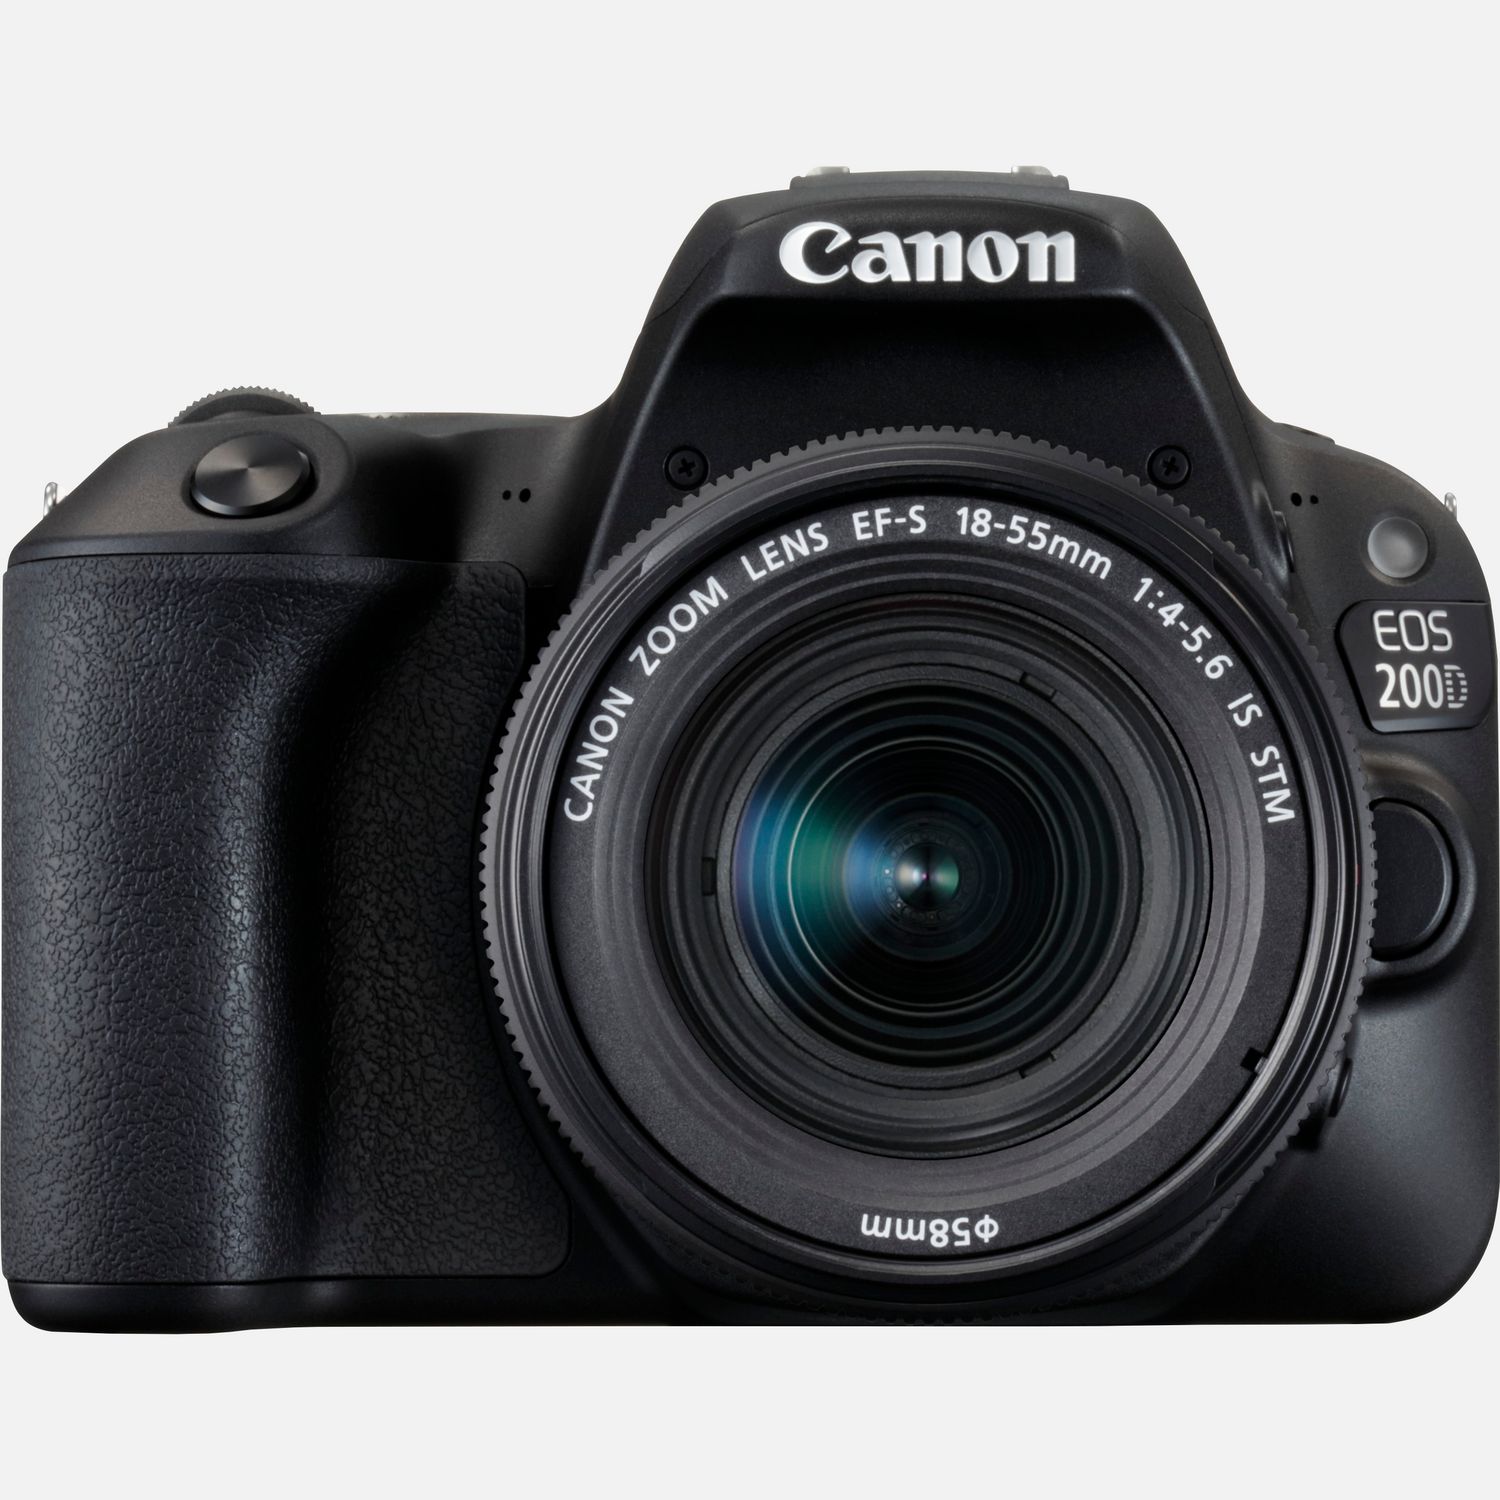 Comprar Canon PIXMA MG3650 - Rojo en Interrumpido — Tienda Canon Espana